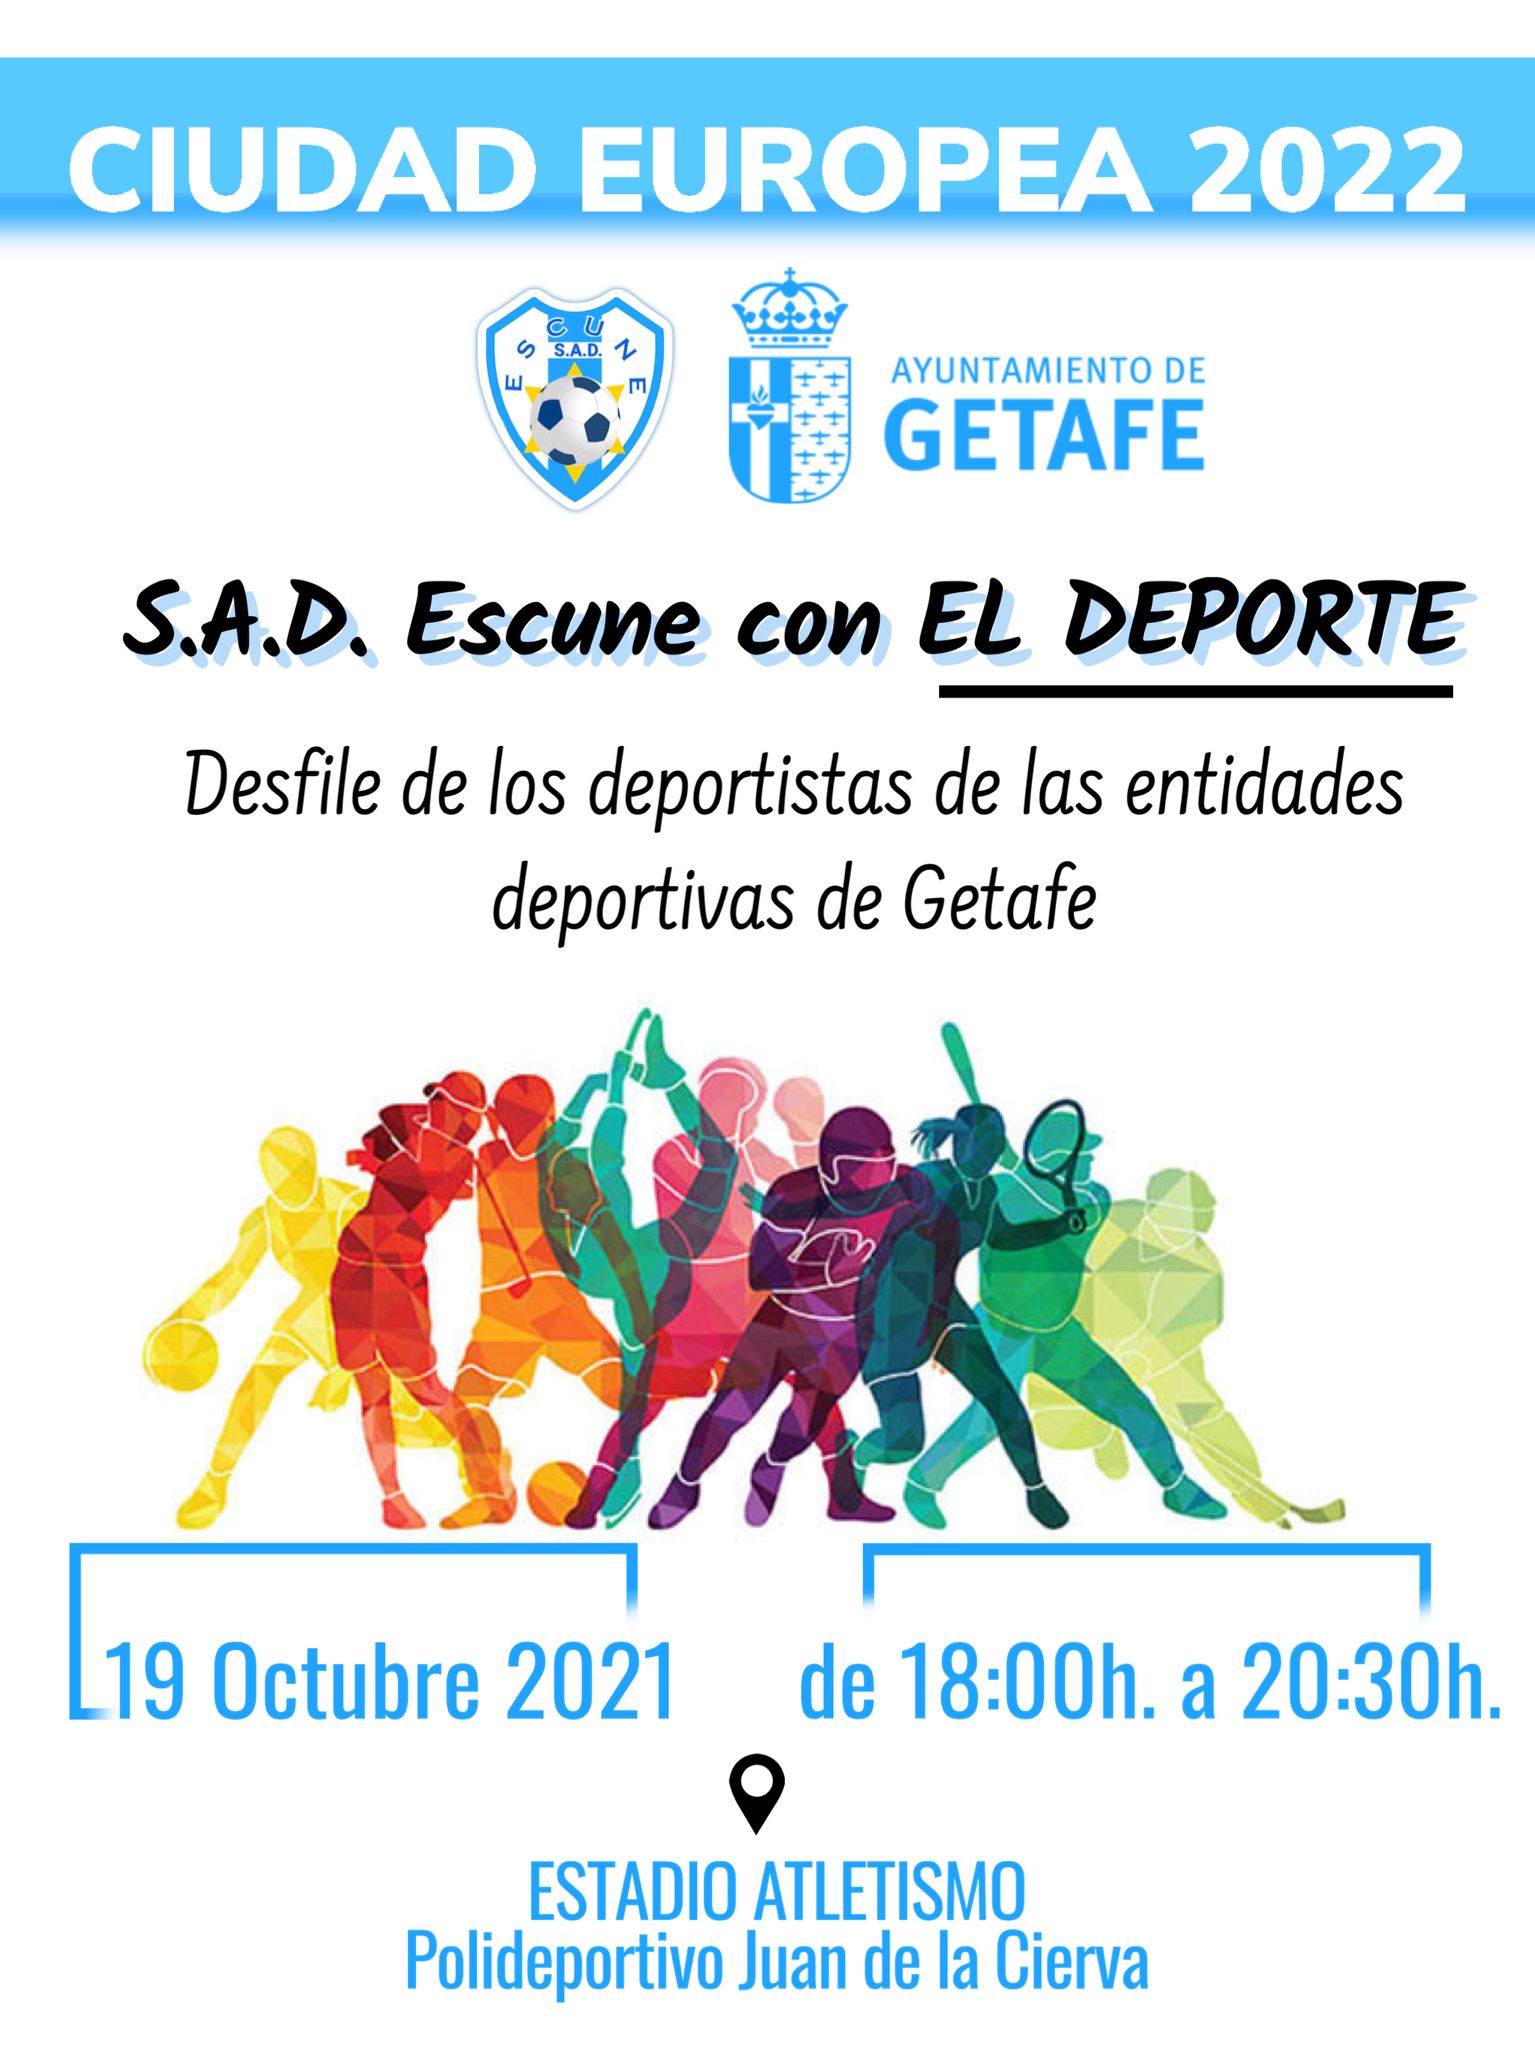 La SAD ESCUNE apoya a Getafe como Ciudad Europea del Deporte